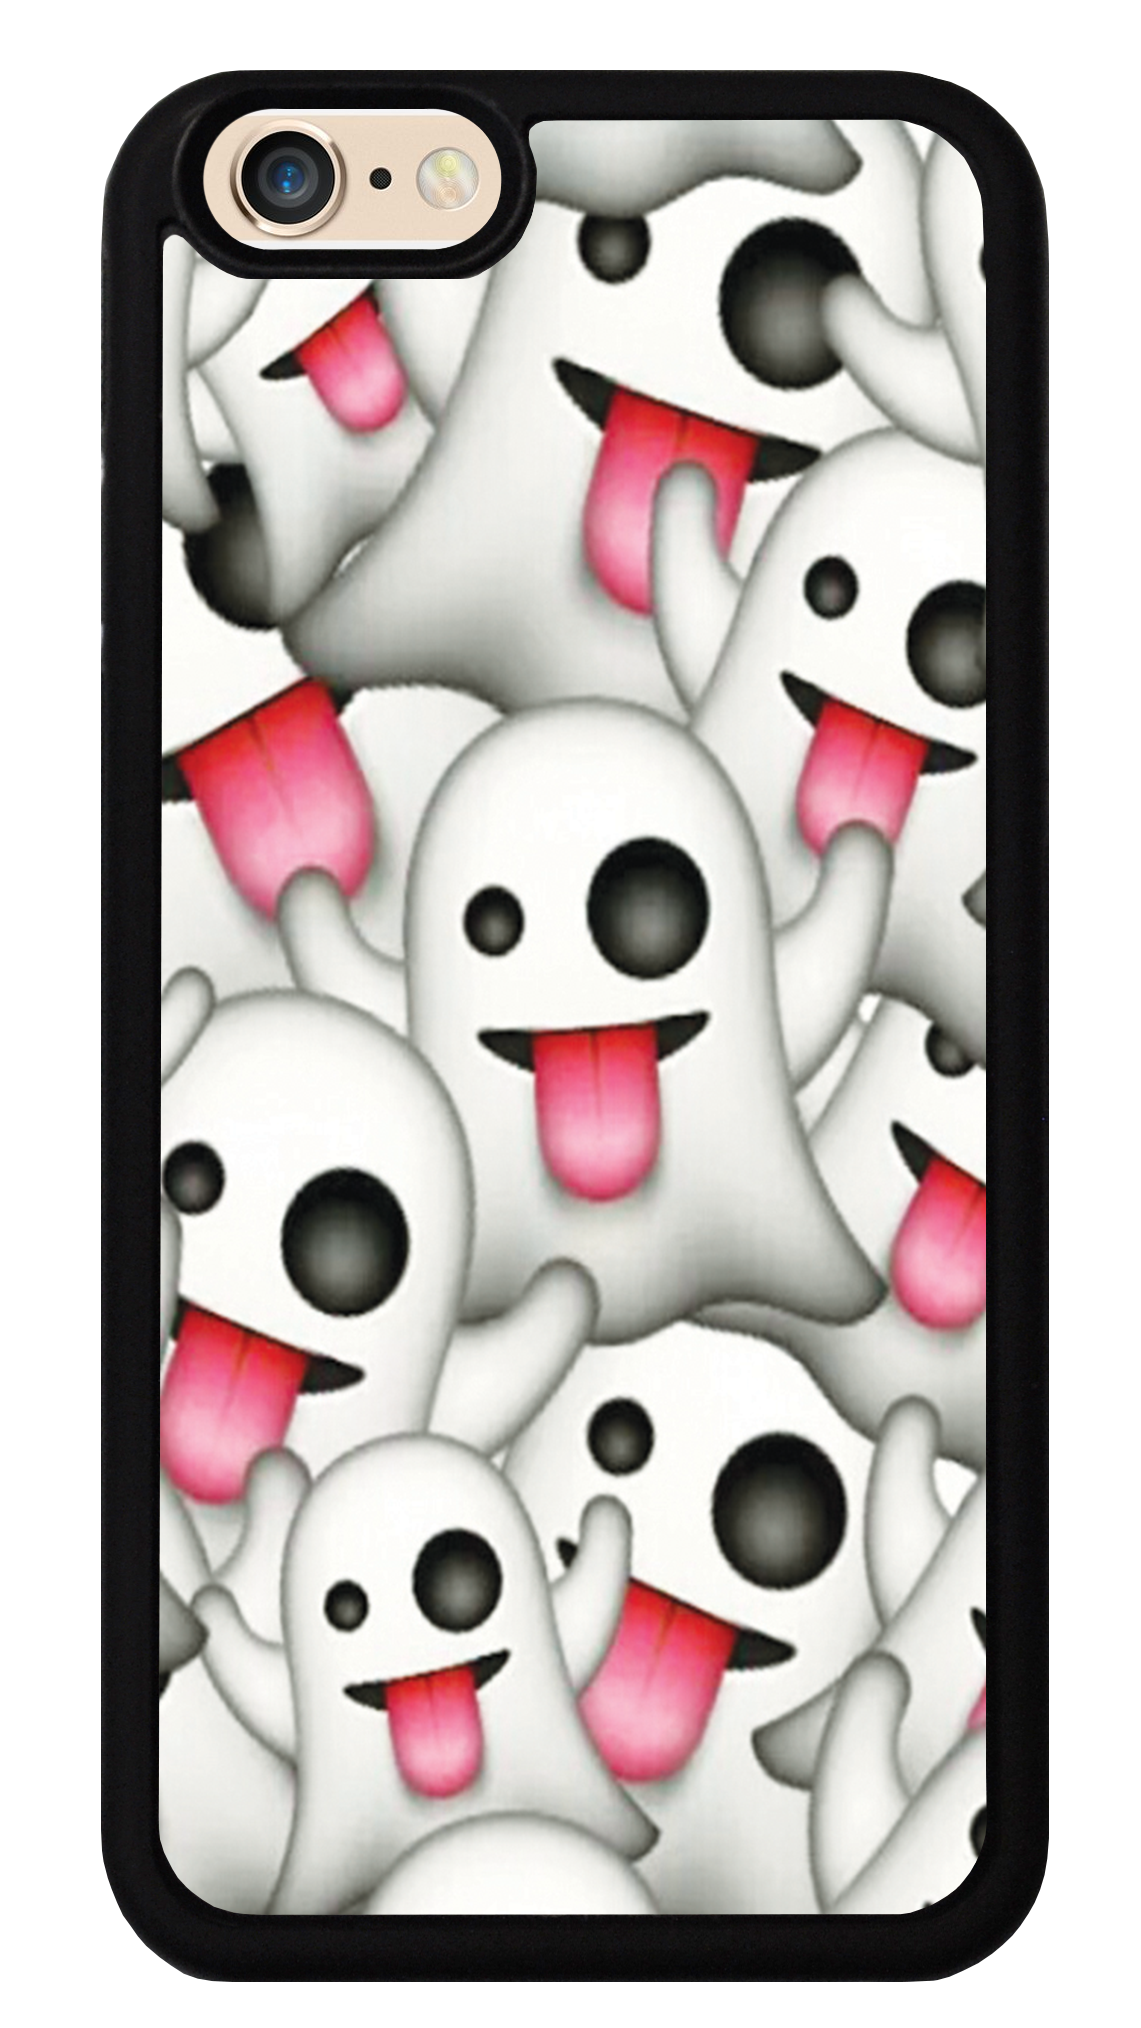 clipart ghost emoji